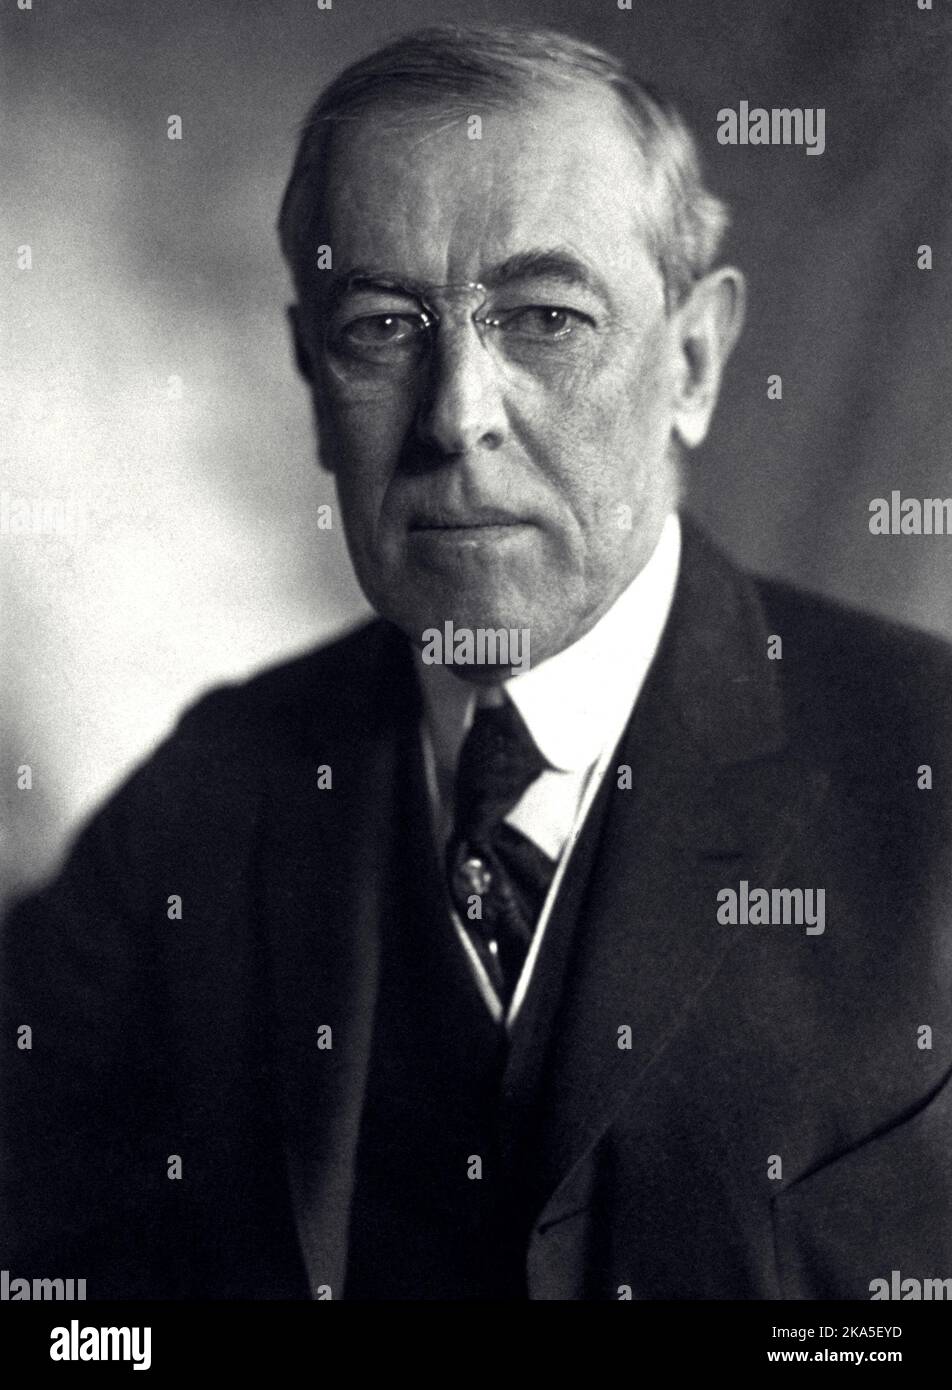 Ein Porträt des US-Präsidenten Woodrow Wilson aus dem Jahr 1919, als er 63 Jahre alt war. Stockfoto